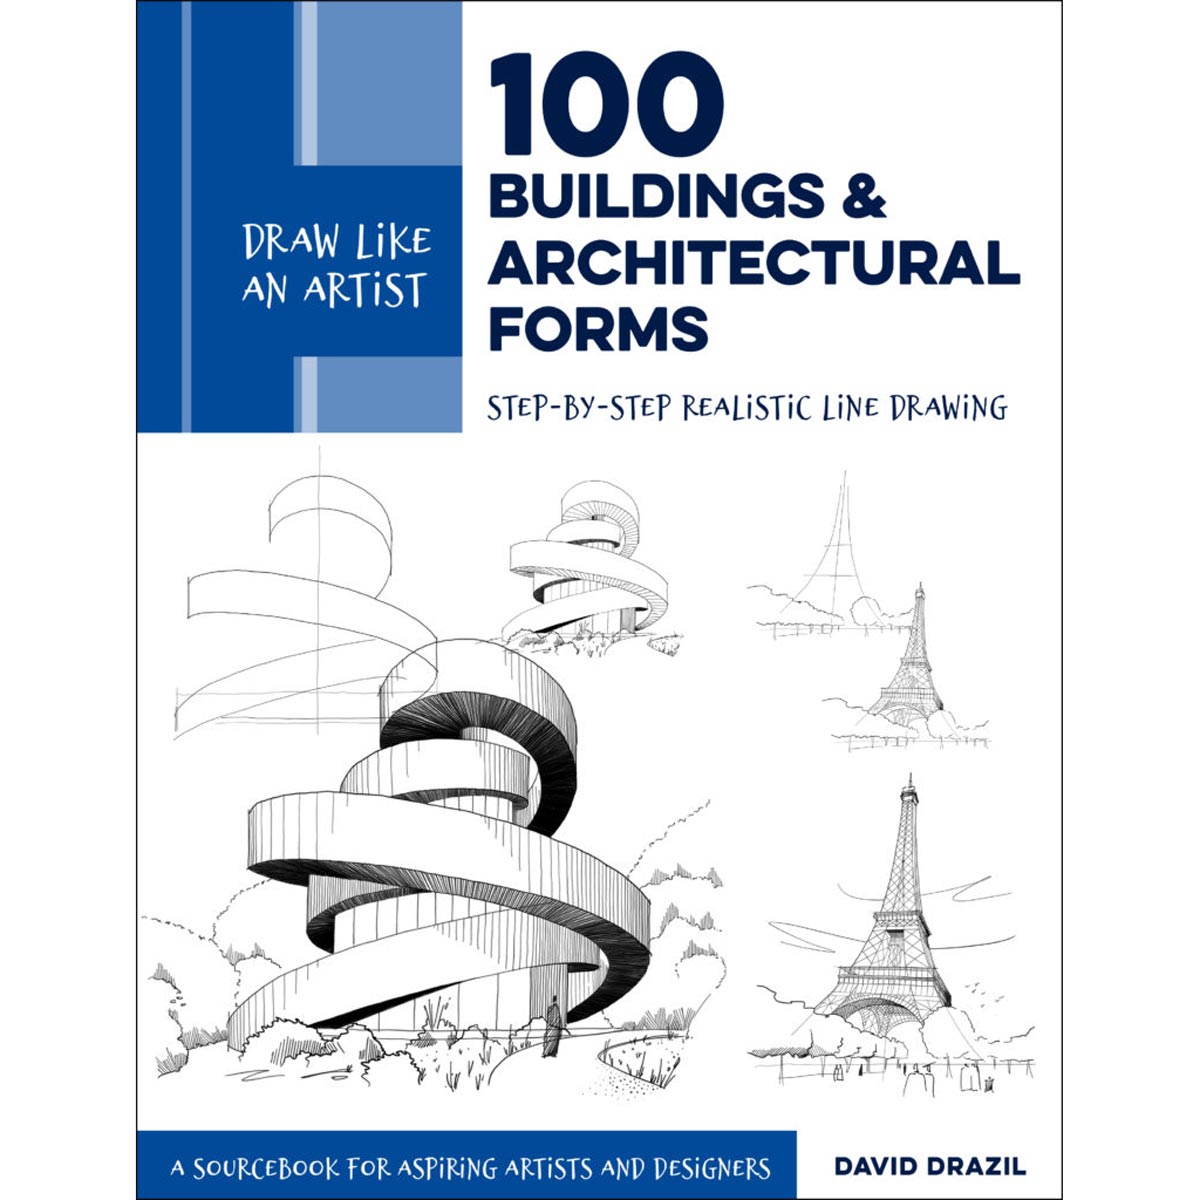 Walter Foster Books-Disegna come un artista: 100 edifici e forme architettoniche